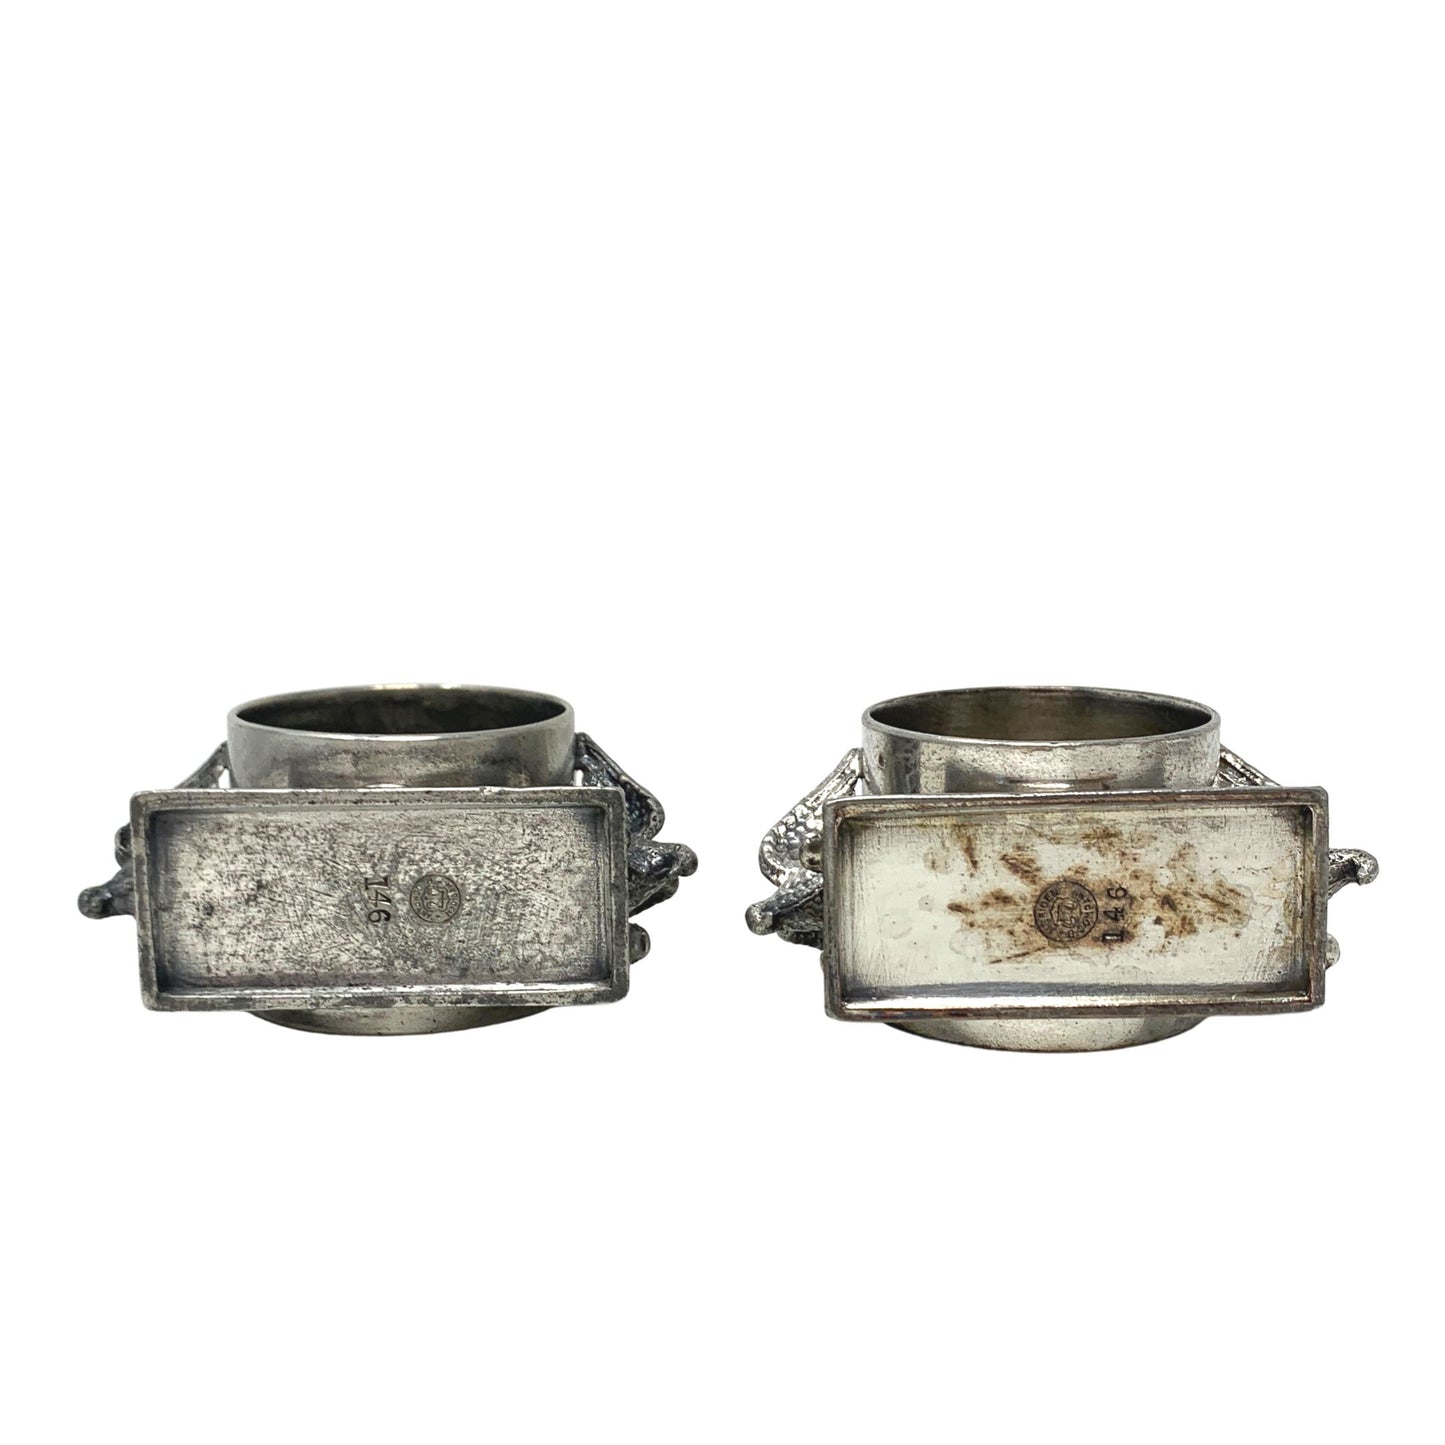 Meriden Britannia Company Double Eagle Silverplate Napkin Rings (2)